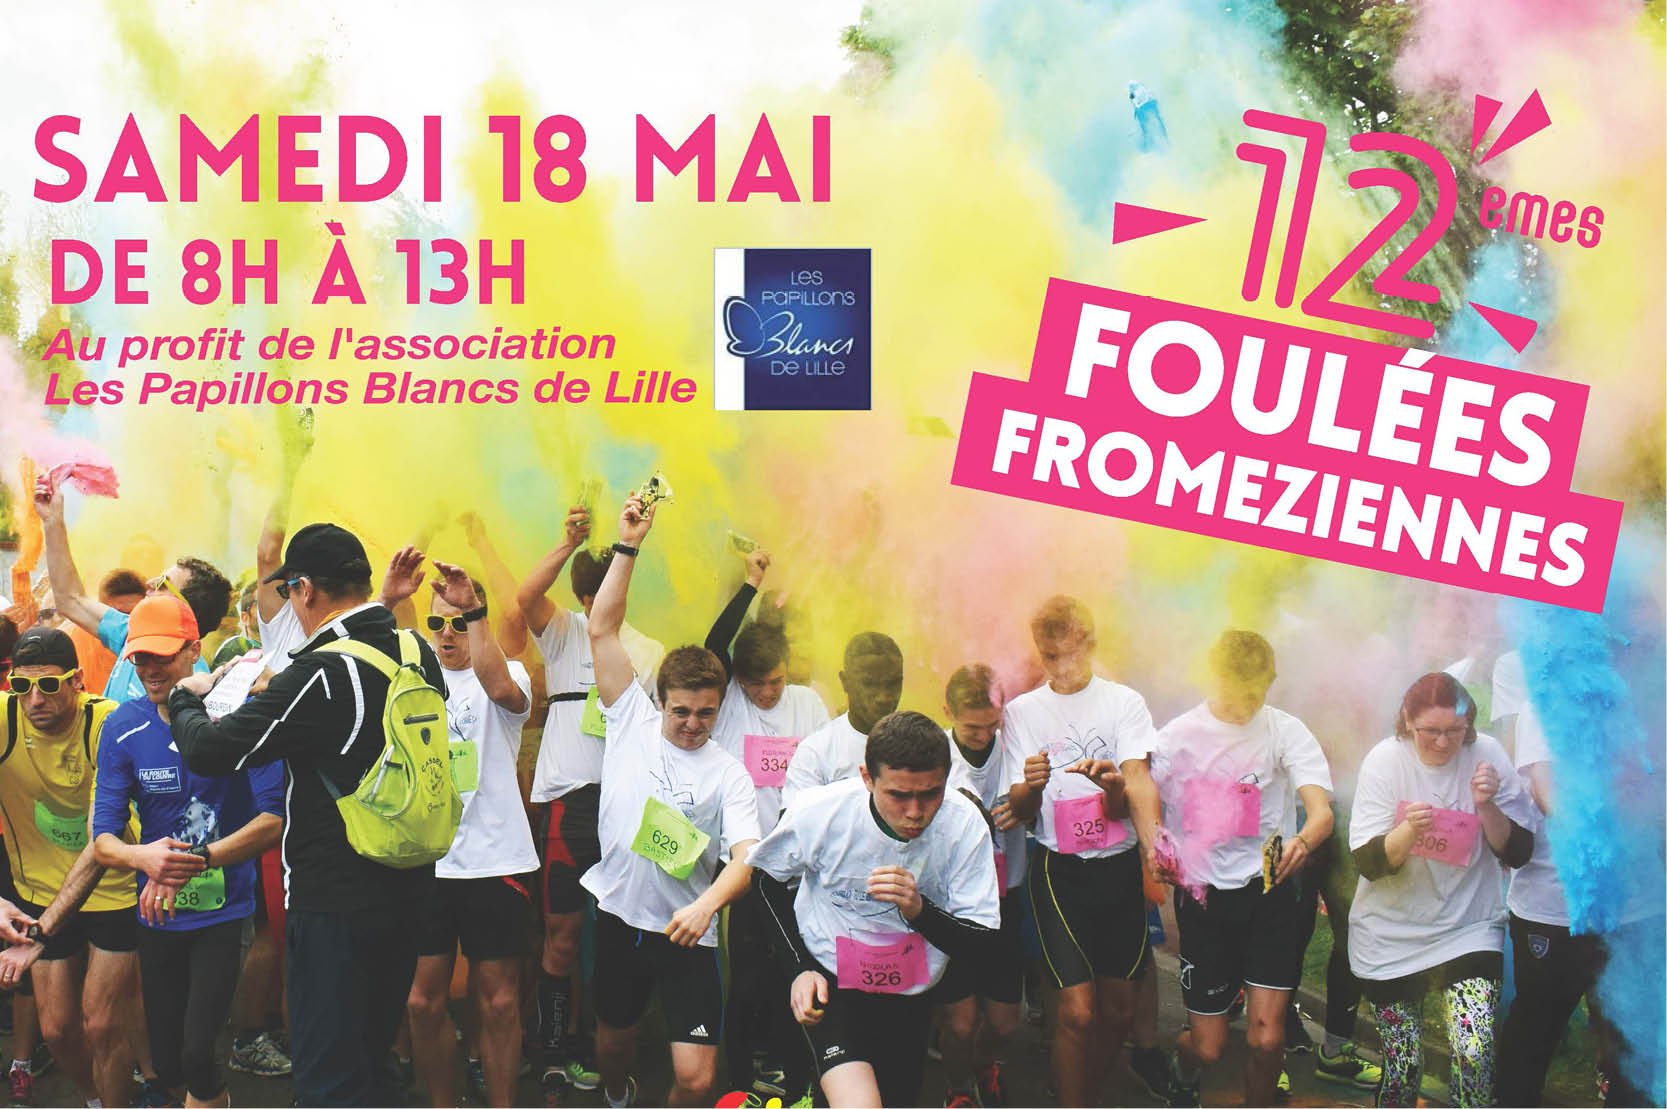 12e Foulées froméziennes Haubourdin 18 mai 2019 Papillons Blancs de Lille